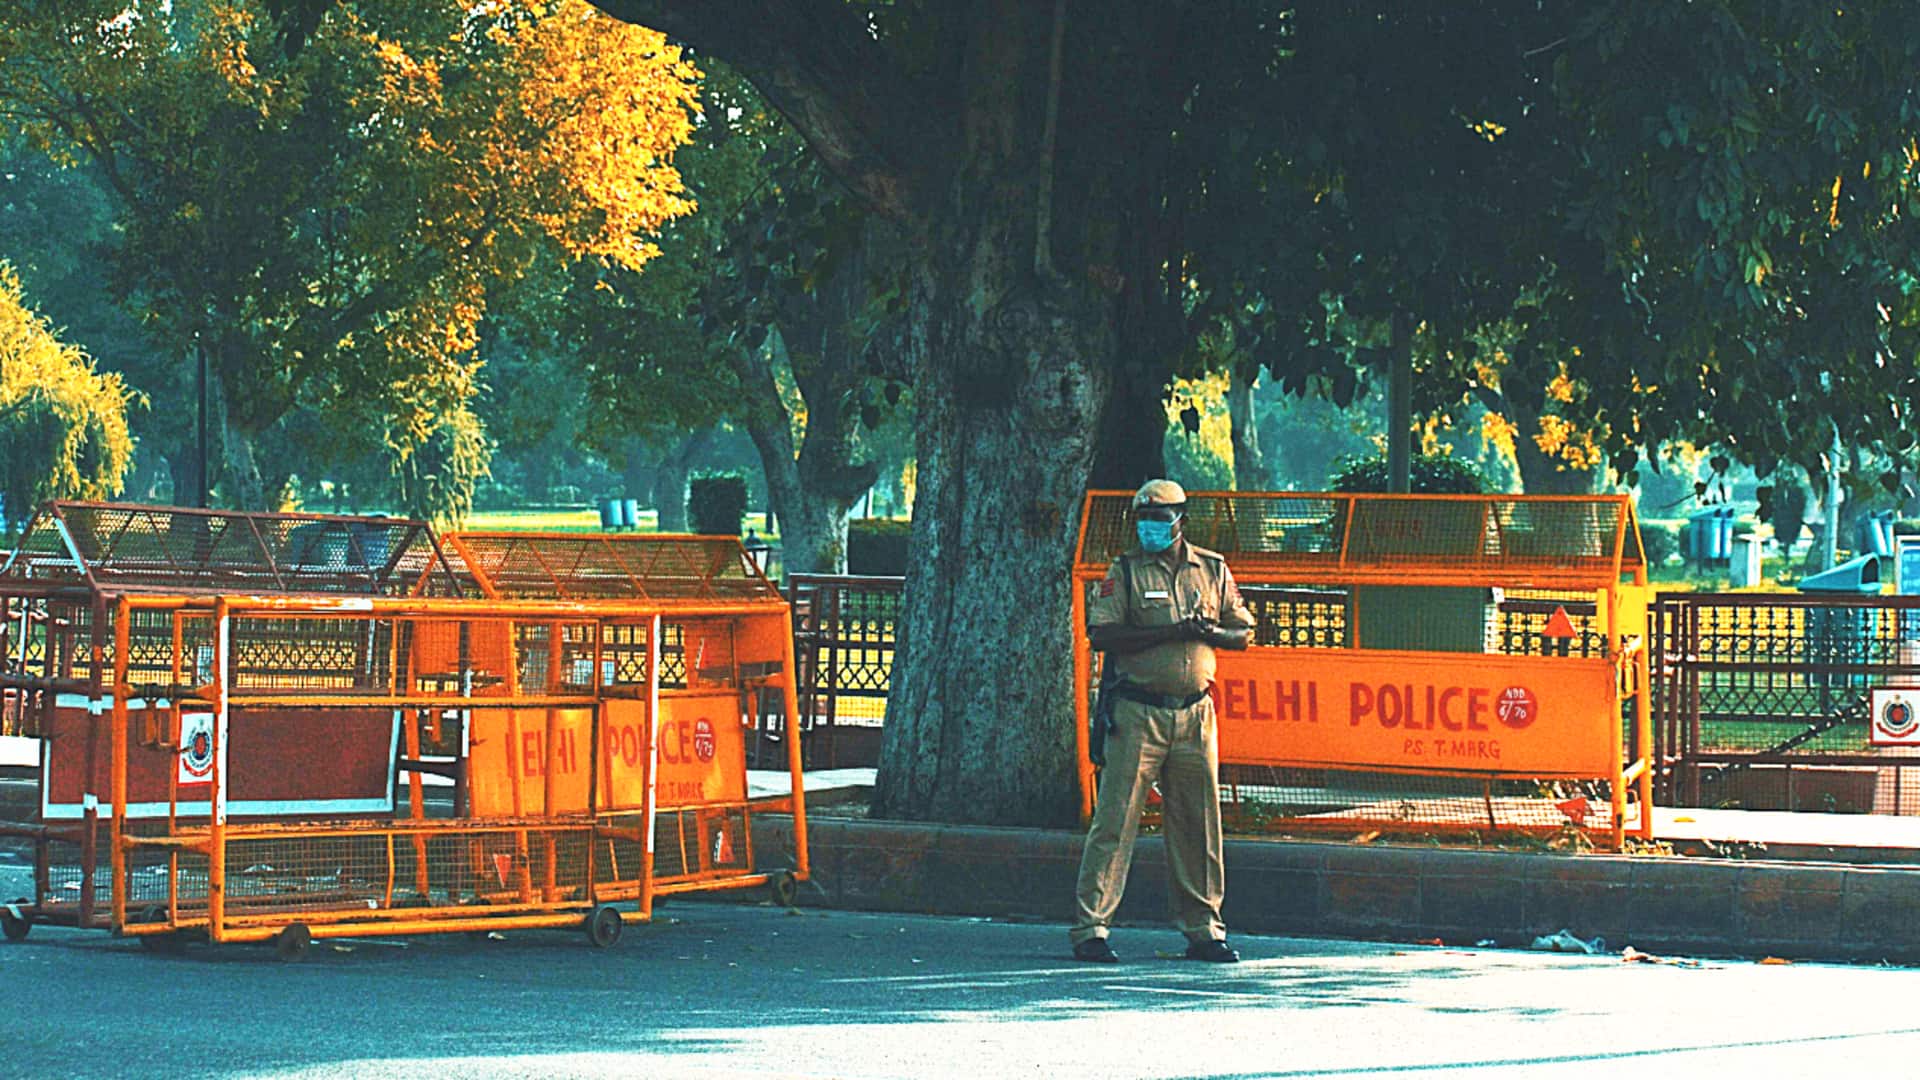 दिल्ली: ड्राइविंग लाइसेंस मांगने पर पुलिसकर्मी को बोनट पर लटकाकर 800 मीटर तक घुमाया